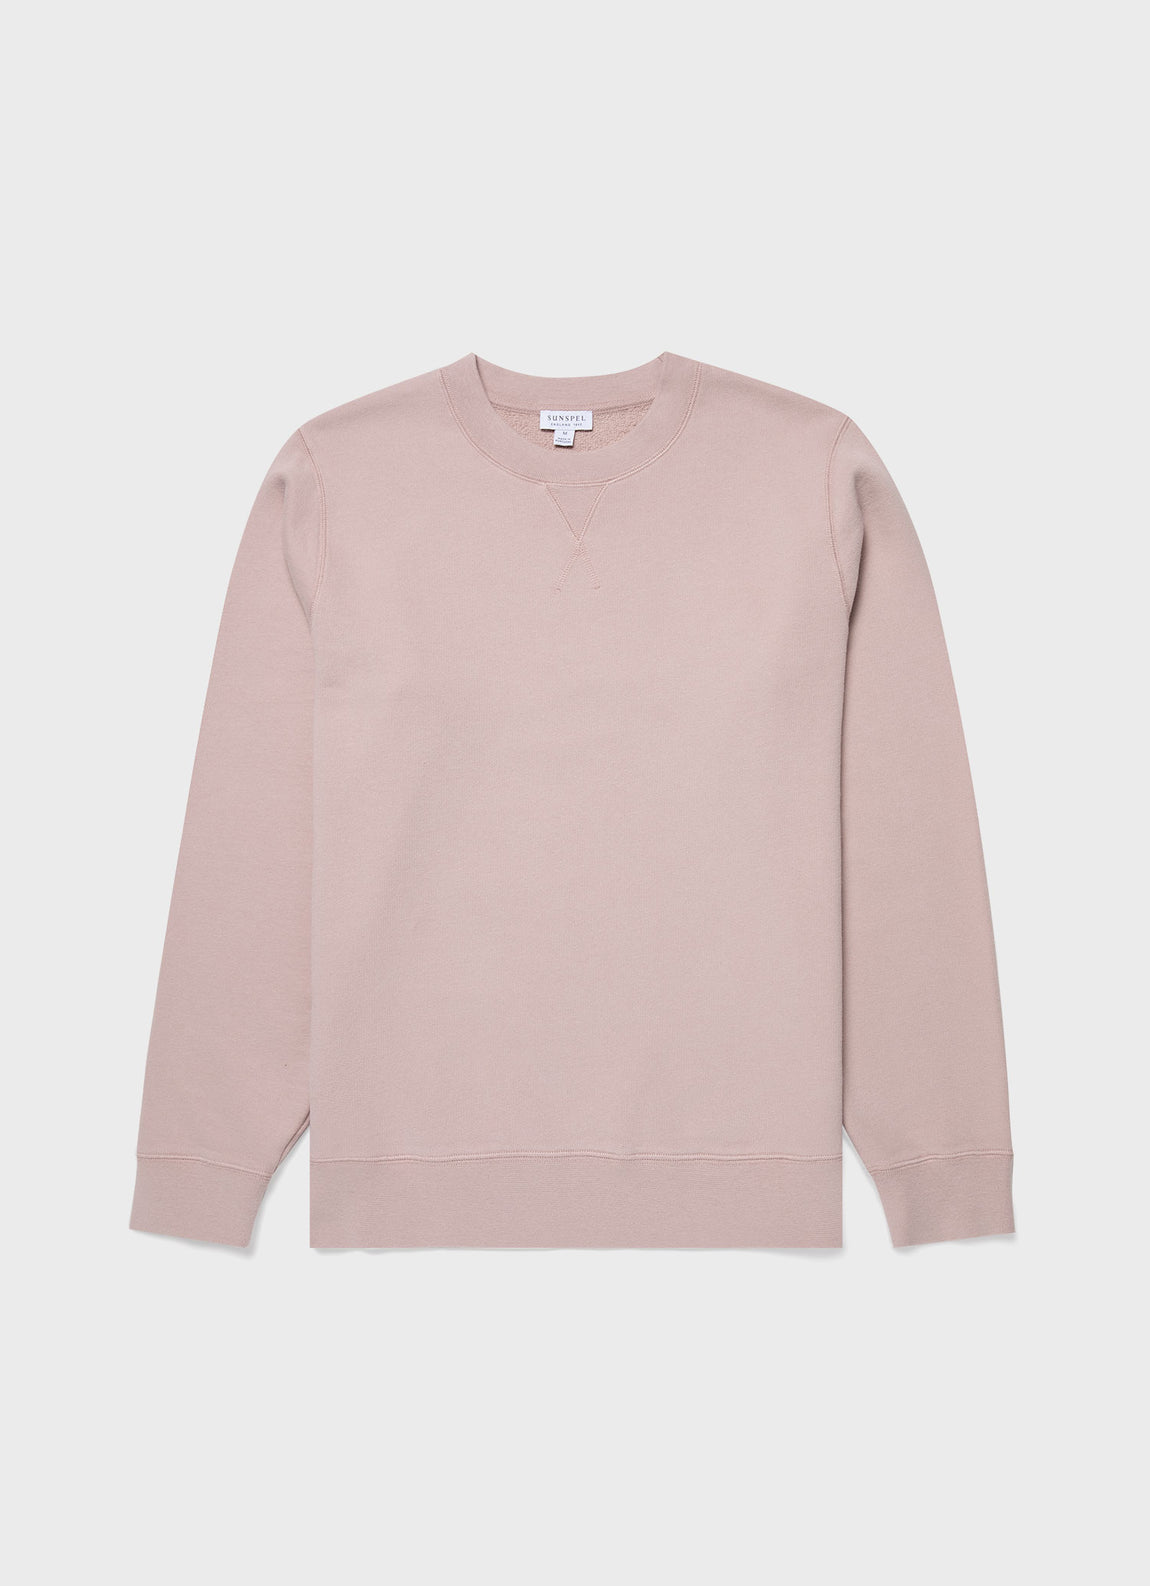 Men's Loopback Sweatshirt in Pale Pink | Sunspel